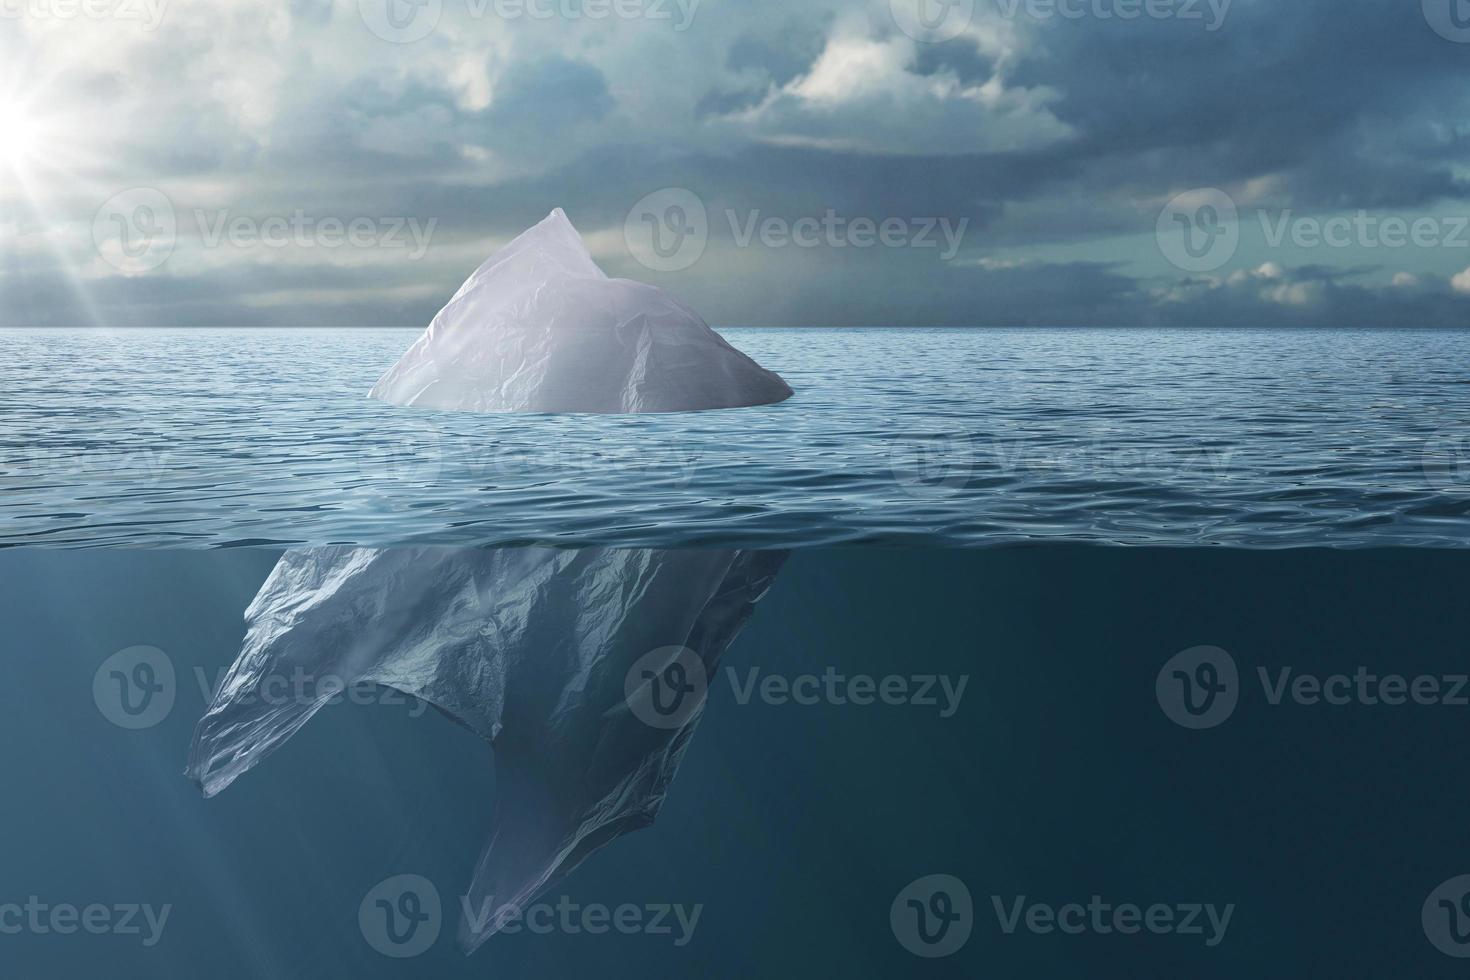 bolsa de plástico flotando en el mar como un iceberg foto